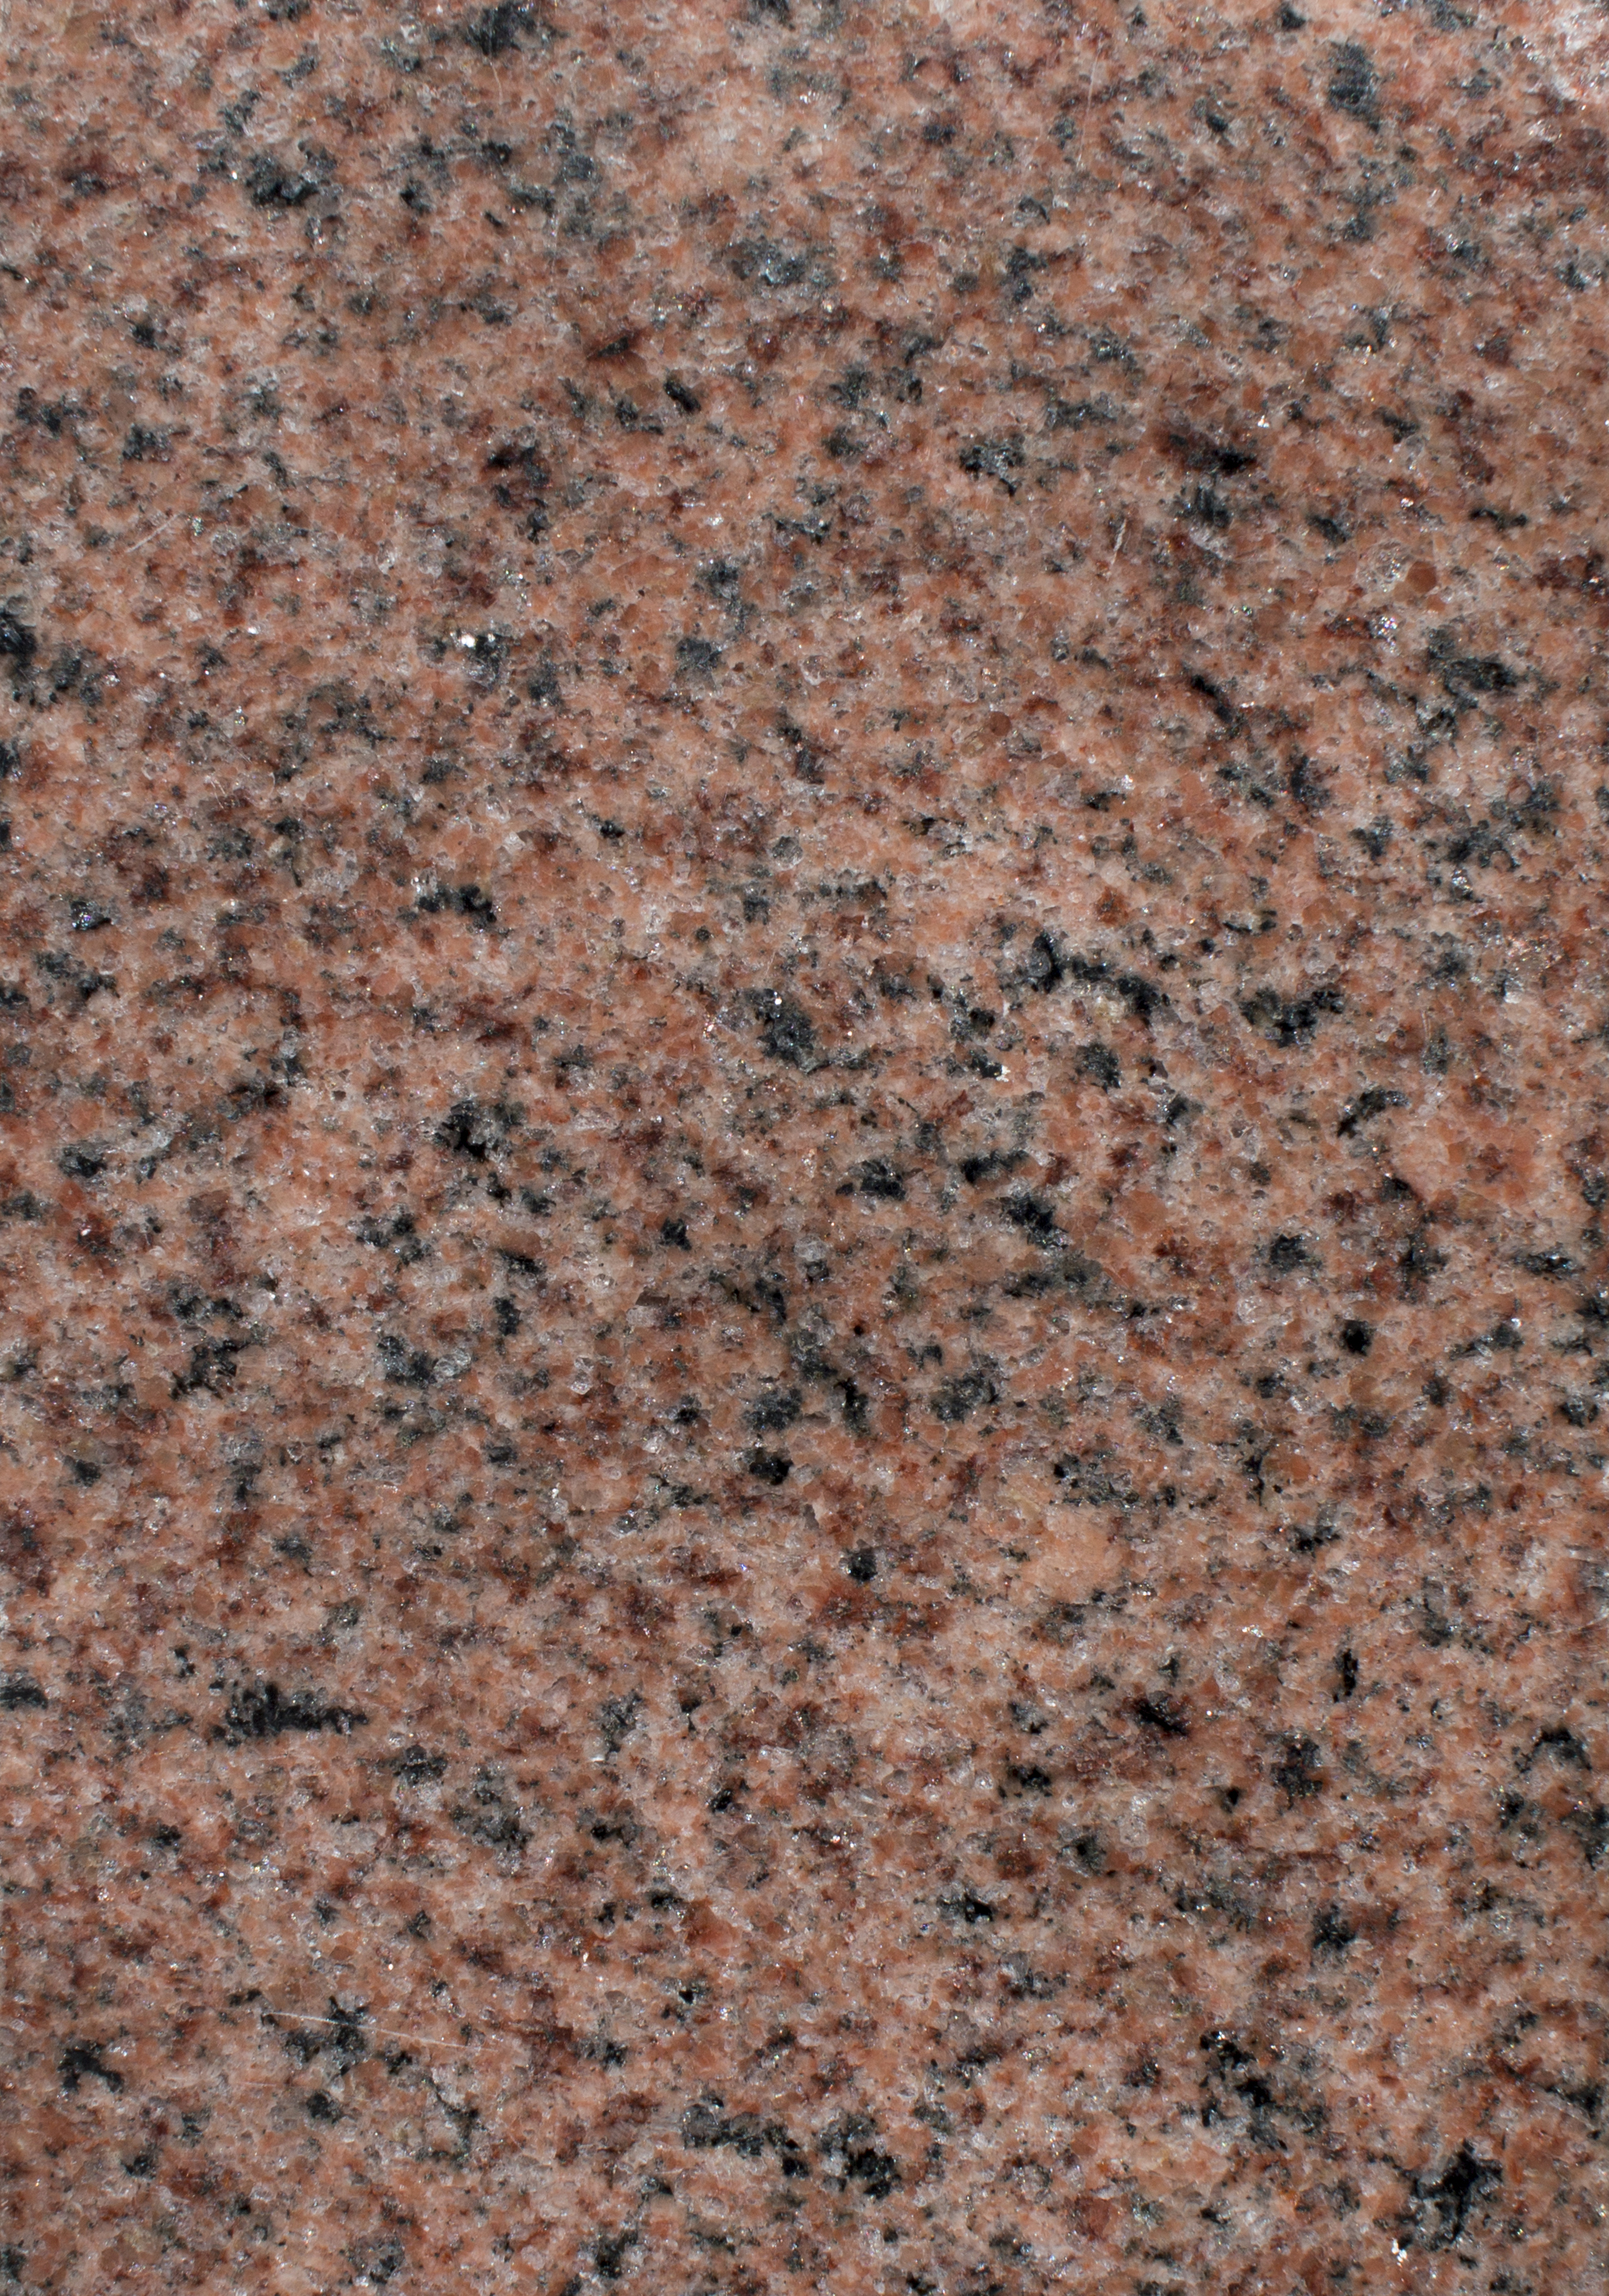 Canadian Pink Granite